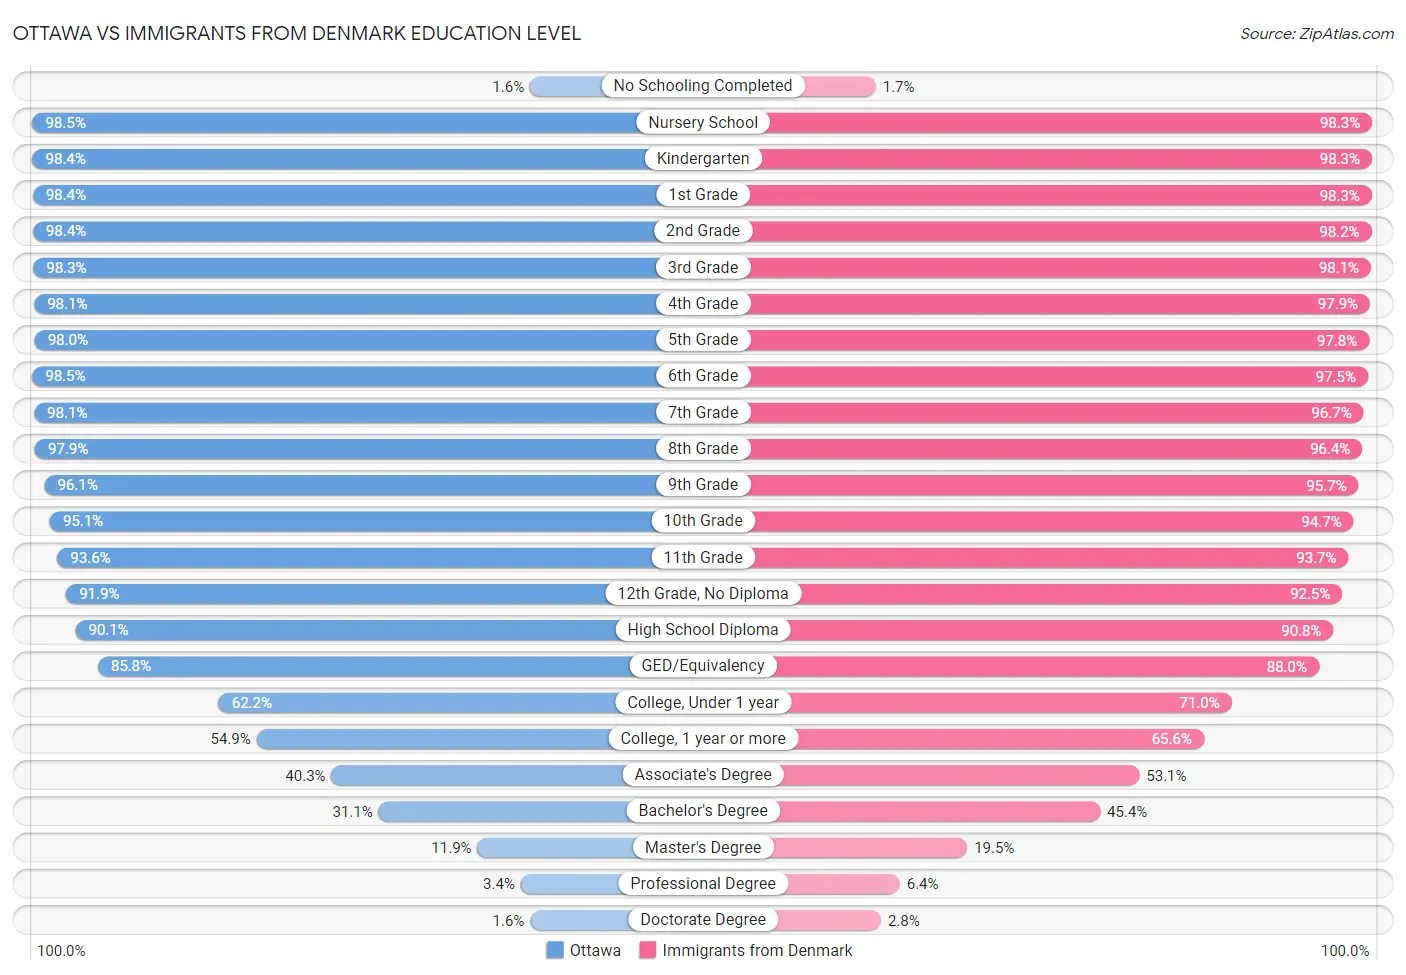 Ottawa vs Immigrants from Denmark Education Level